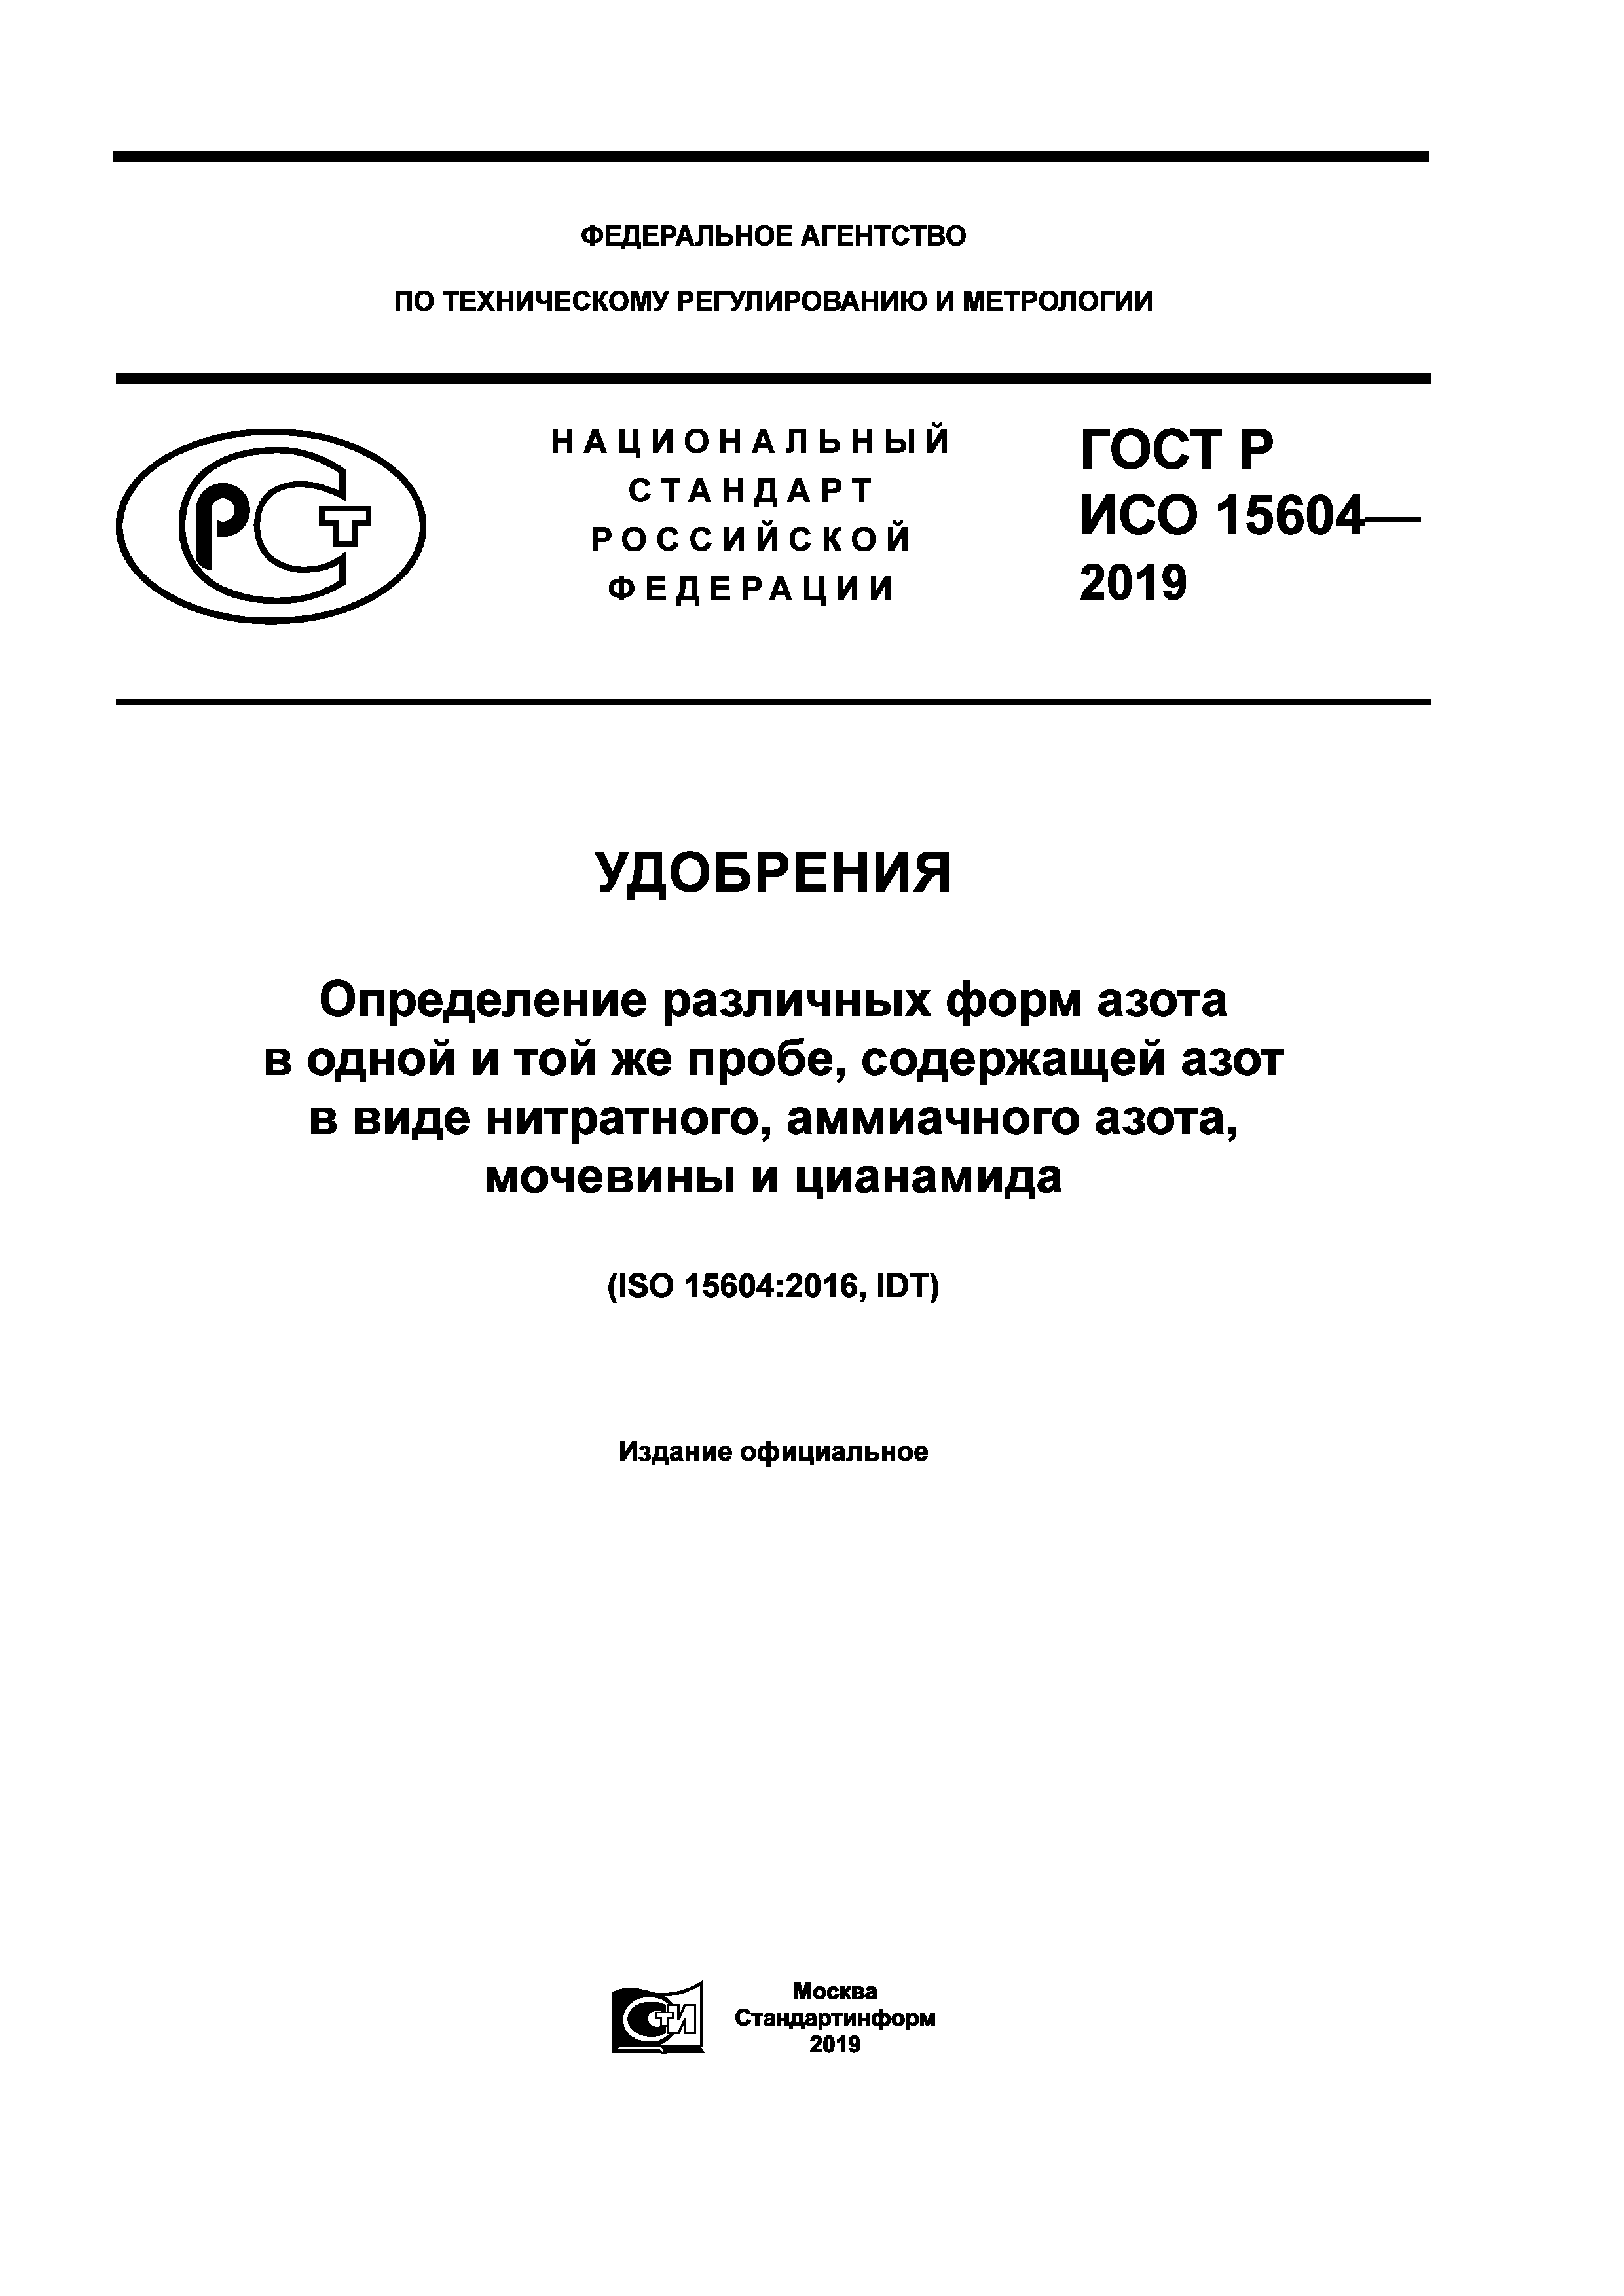 ГОСТ Р ИСО 15604-2019